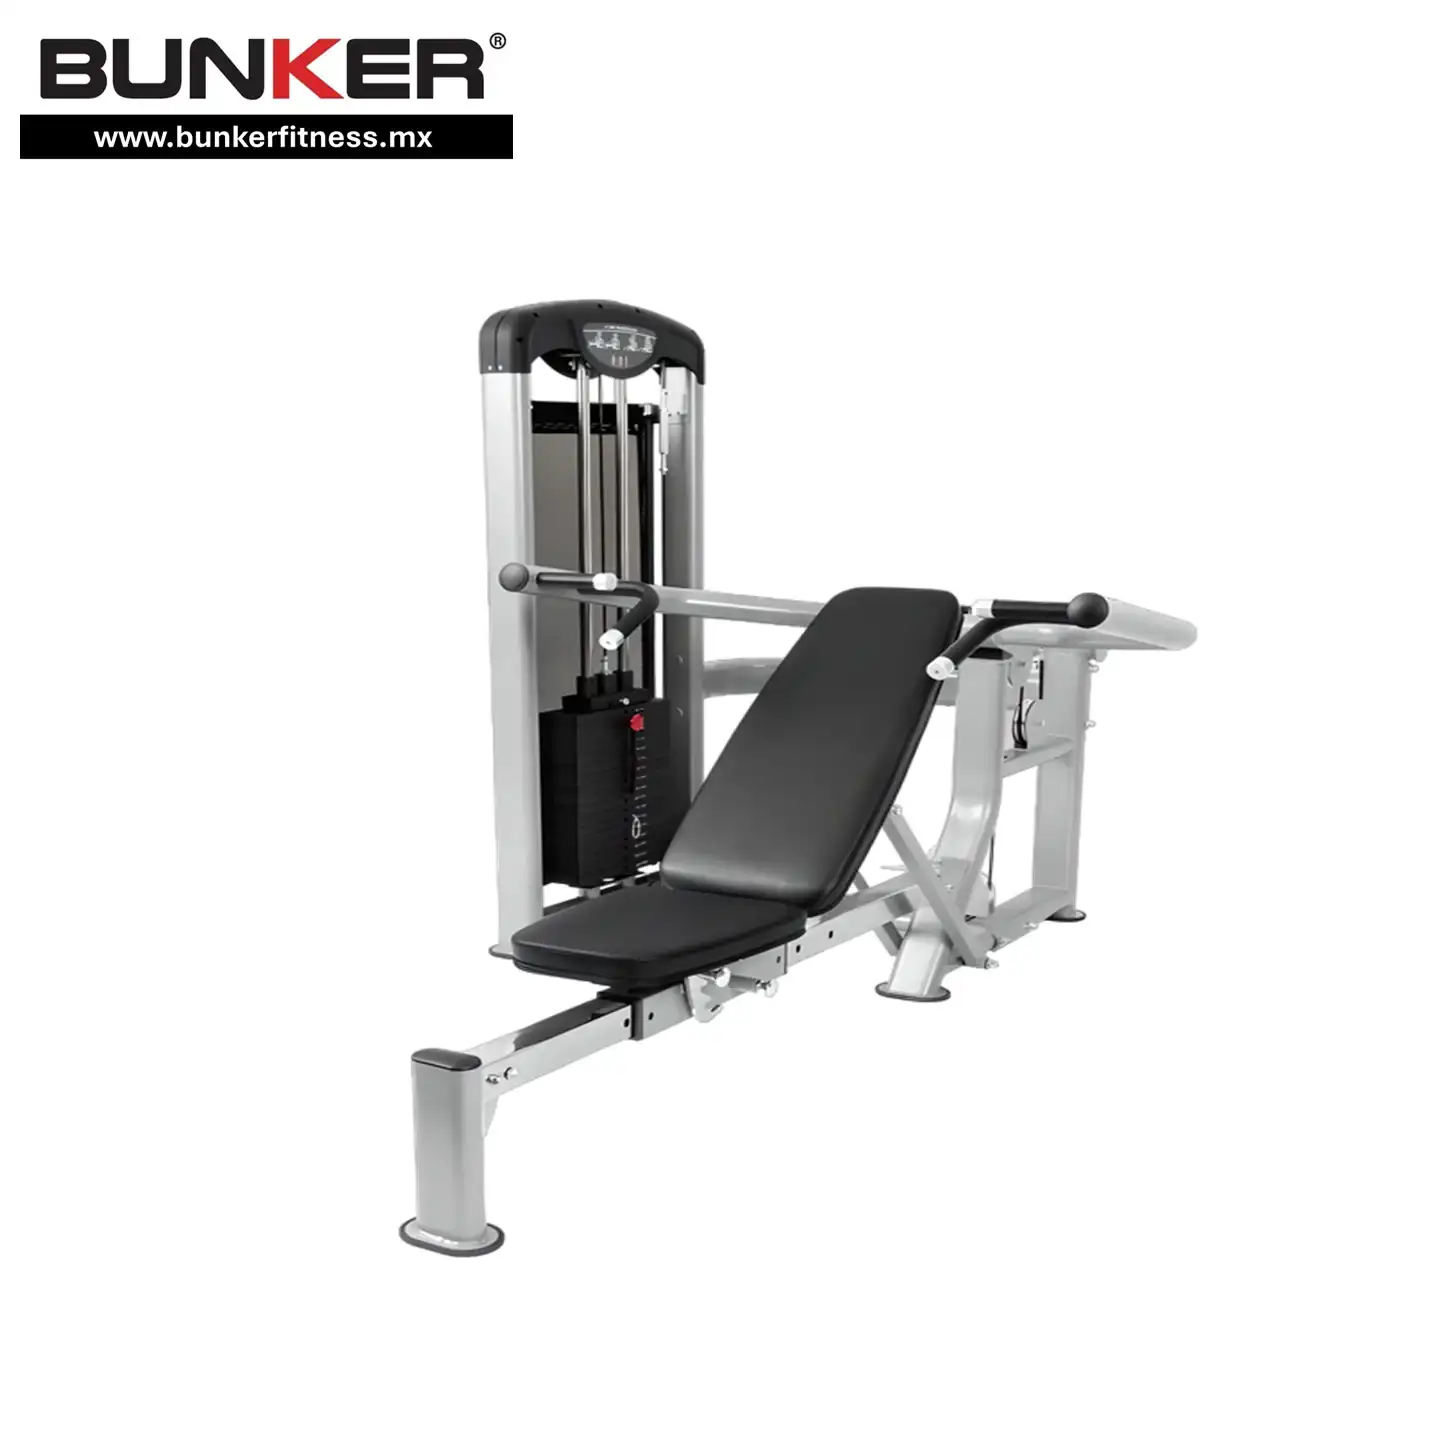 press de pecho y hombro dual multifuncional  para ejercicio y gimnasio en casa bunker gym bunker fitness